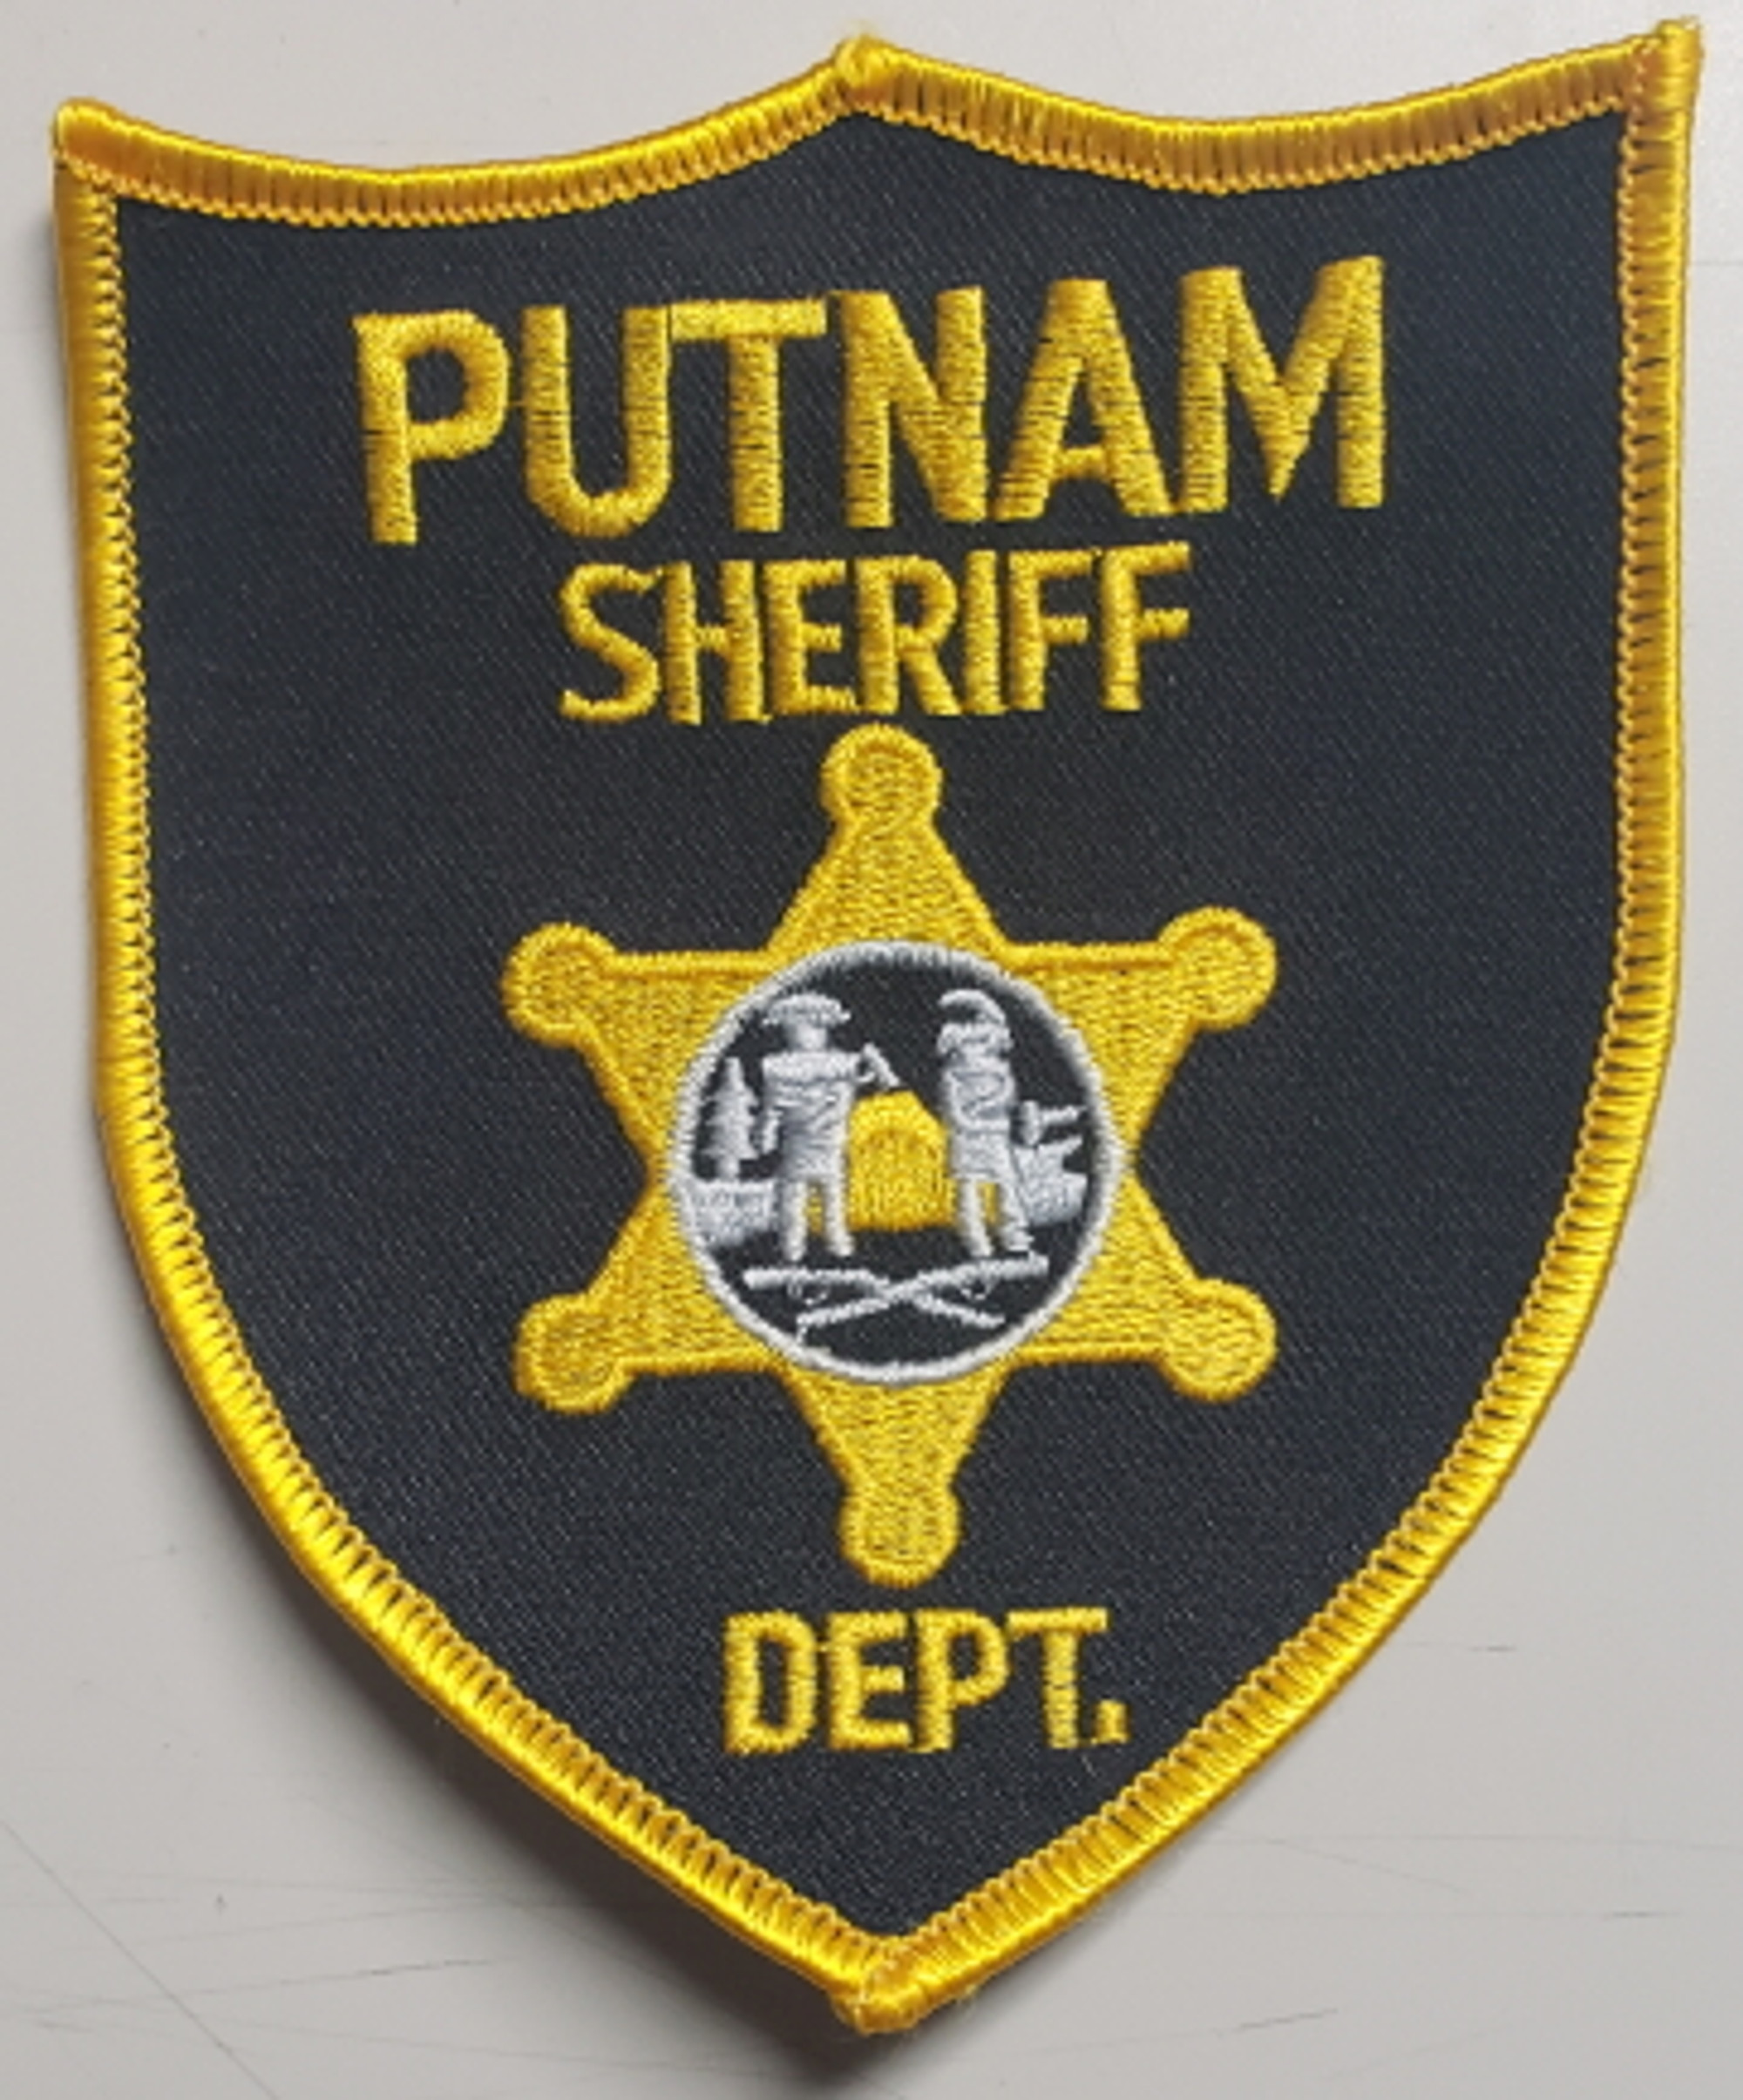 Putnam Sheriff Dept WV Police Patch - GOLD